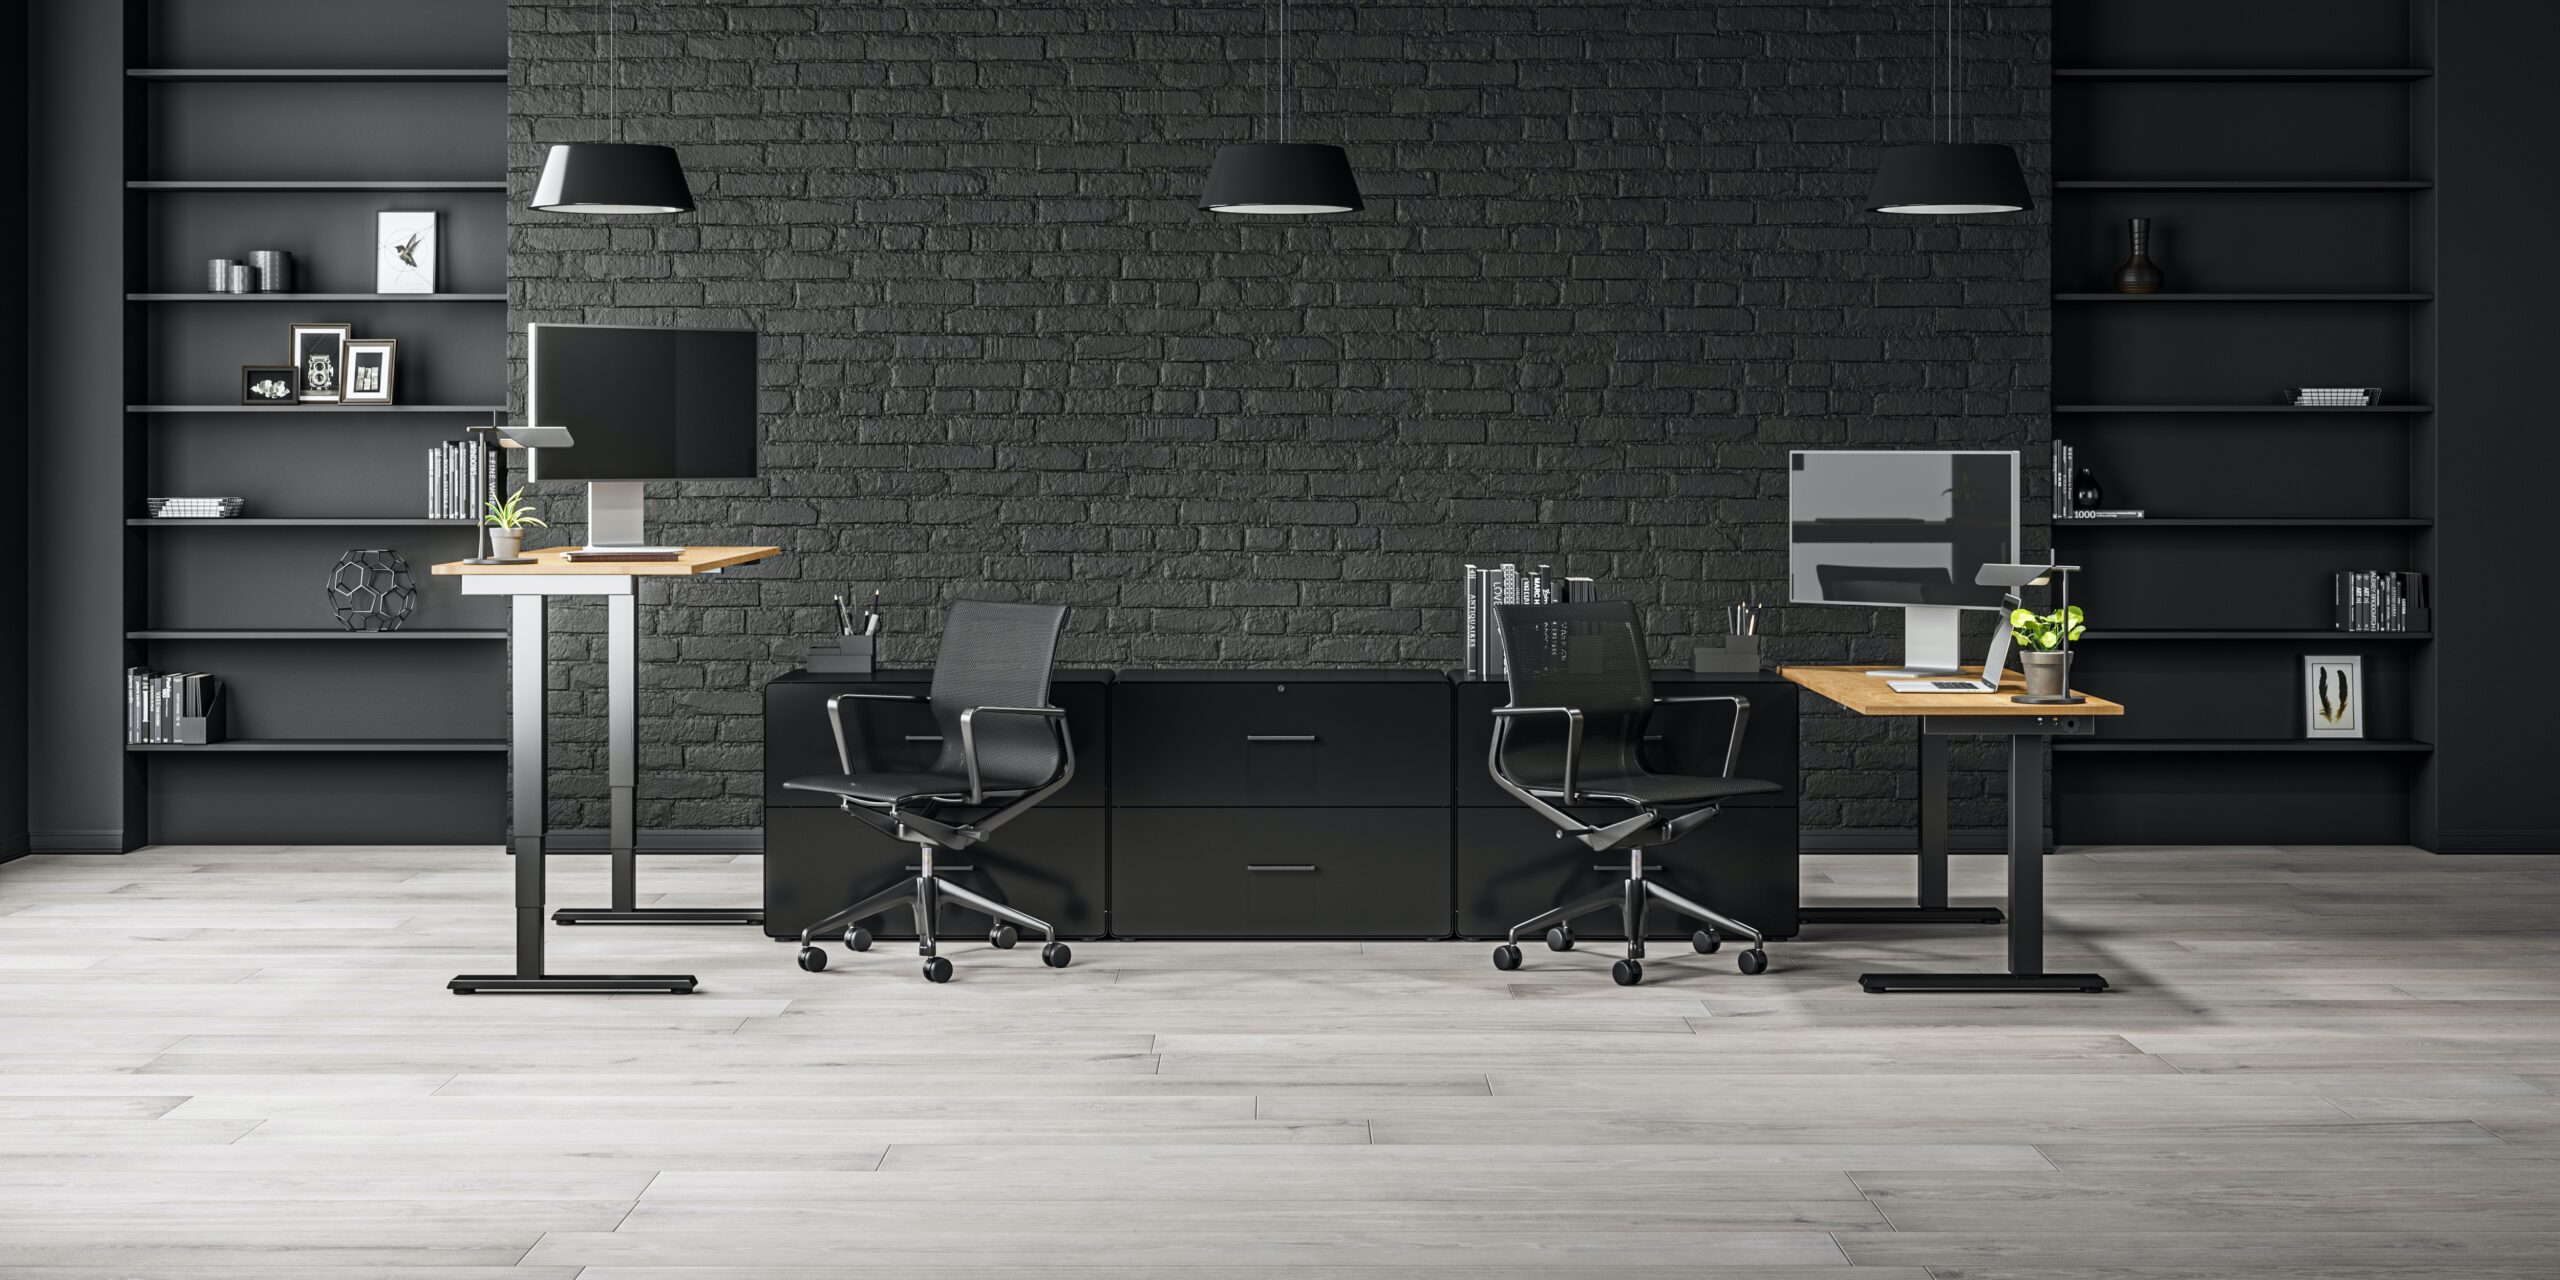 Bilden visar: Begagnade kontorsmöbler - En bild som illustrerar ett varierat utbud av begagnade kontorsmöbler, inklusive skrivbord, stolar och hyllor, som erbjuder ekonomiska och hållbara alternativ för att inreda din arbetsplats.